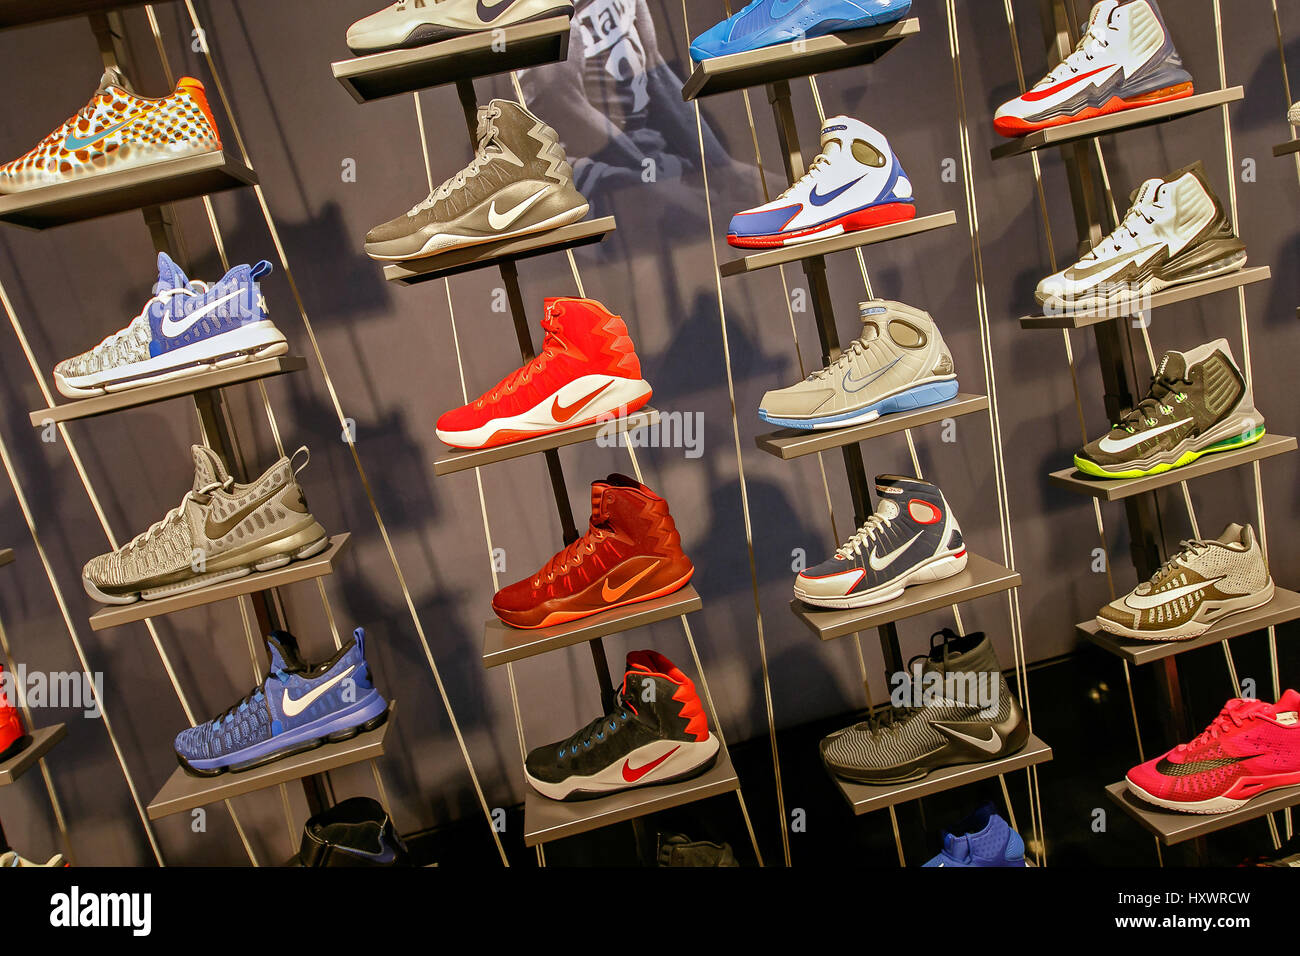 Un assortiment de chaussures de basket Nike pour vendre à la NBA store à Manhattan Photo Stock -